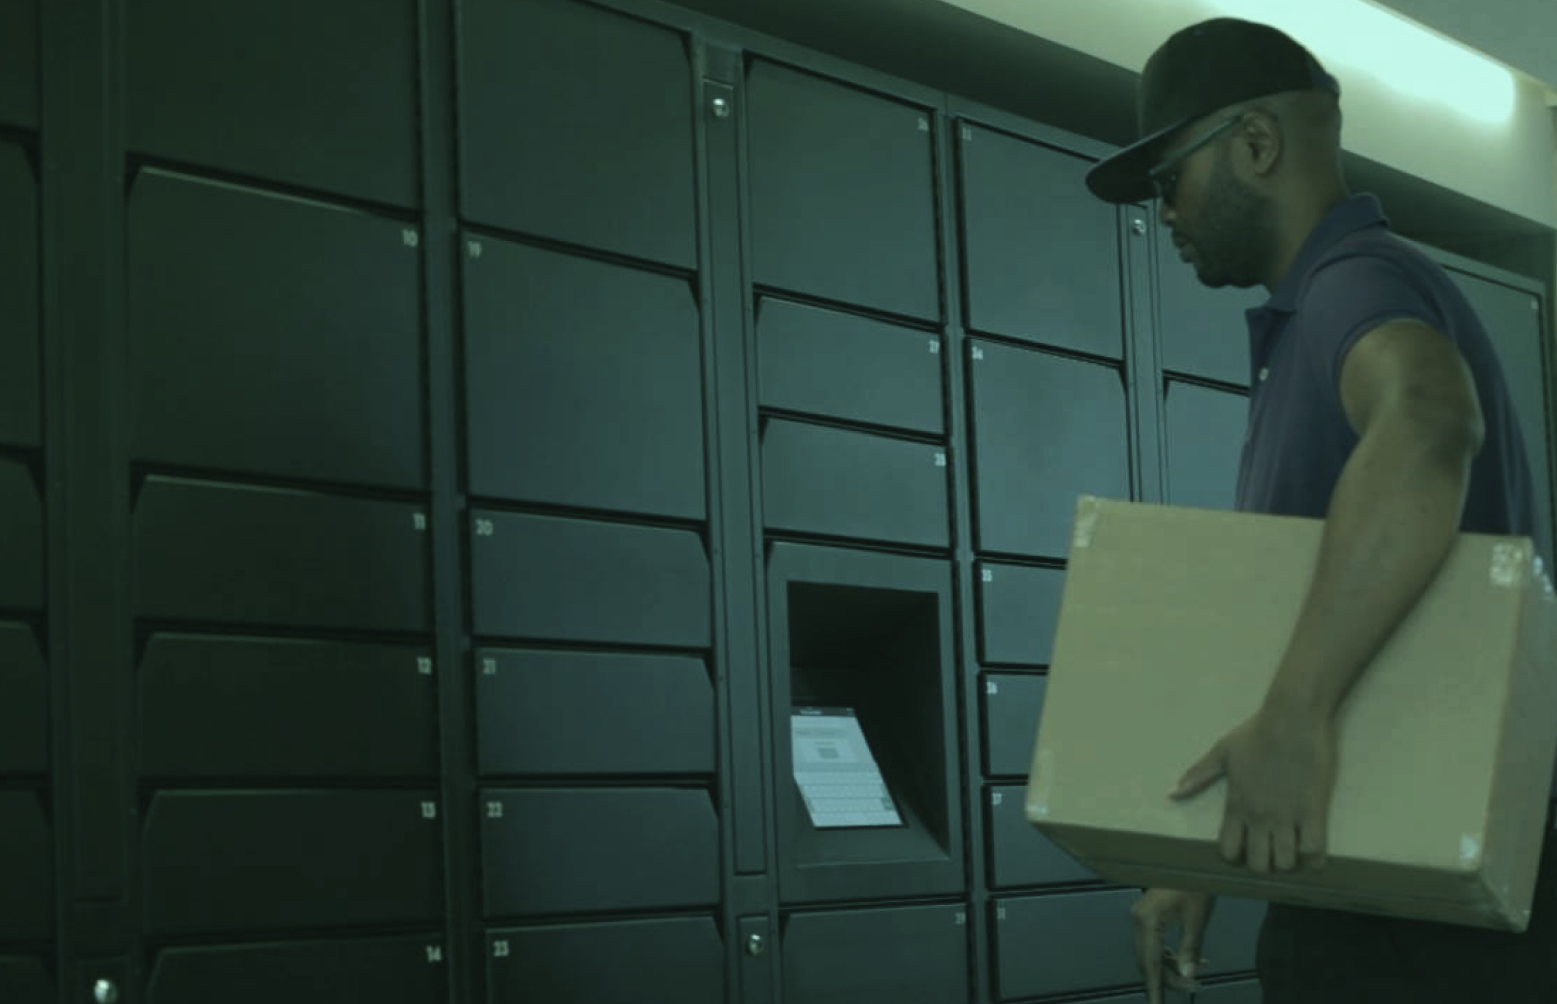 Como funciona o armazenamento inteligente em smart lockers?